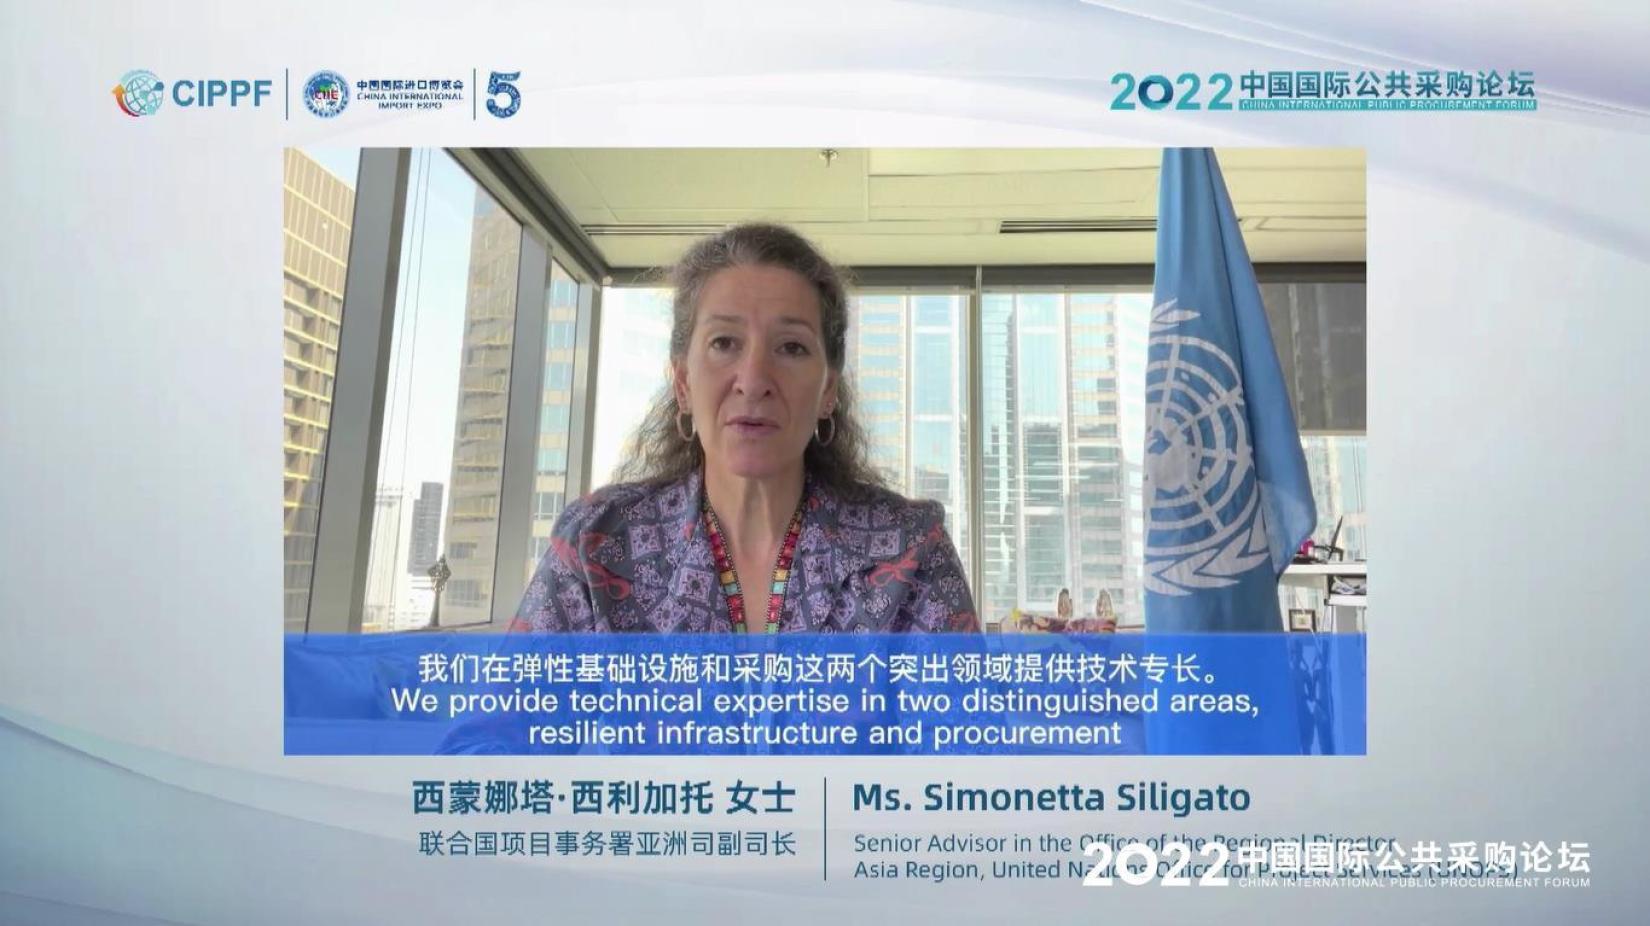 联合国项目事务署亚洲司副司长西蒙娜塔·西利加托